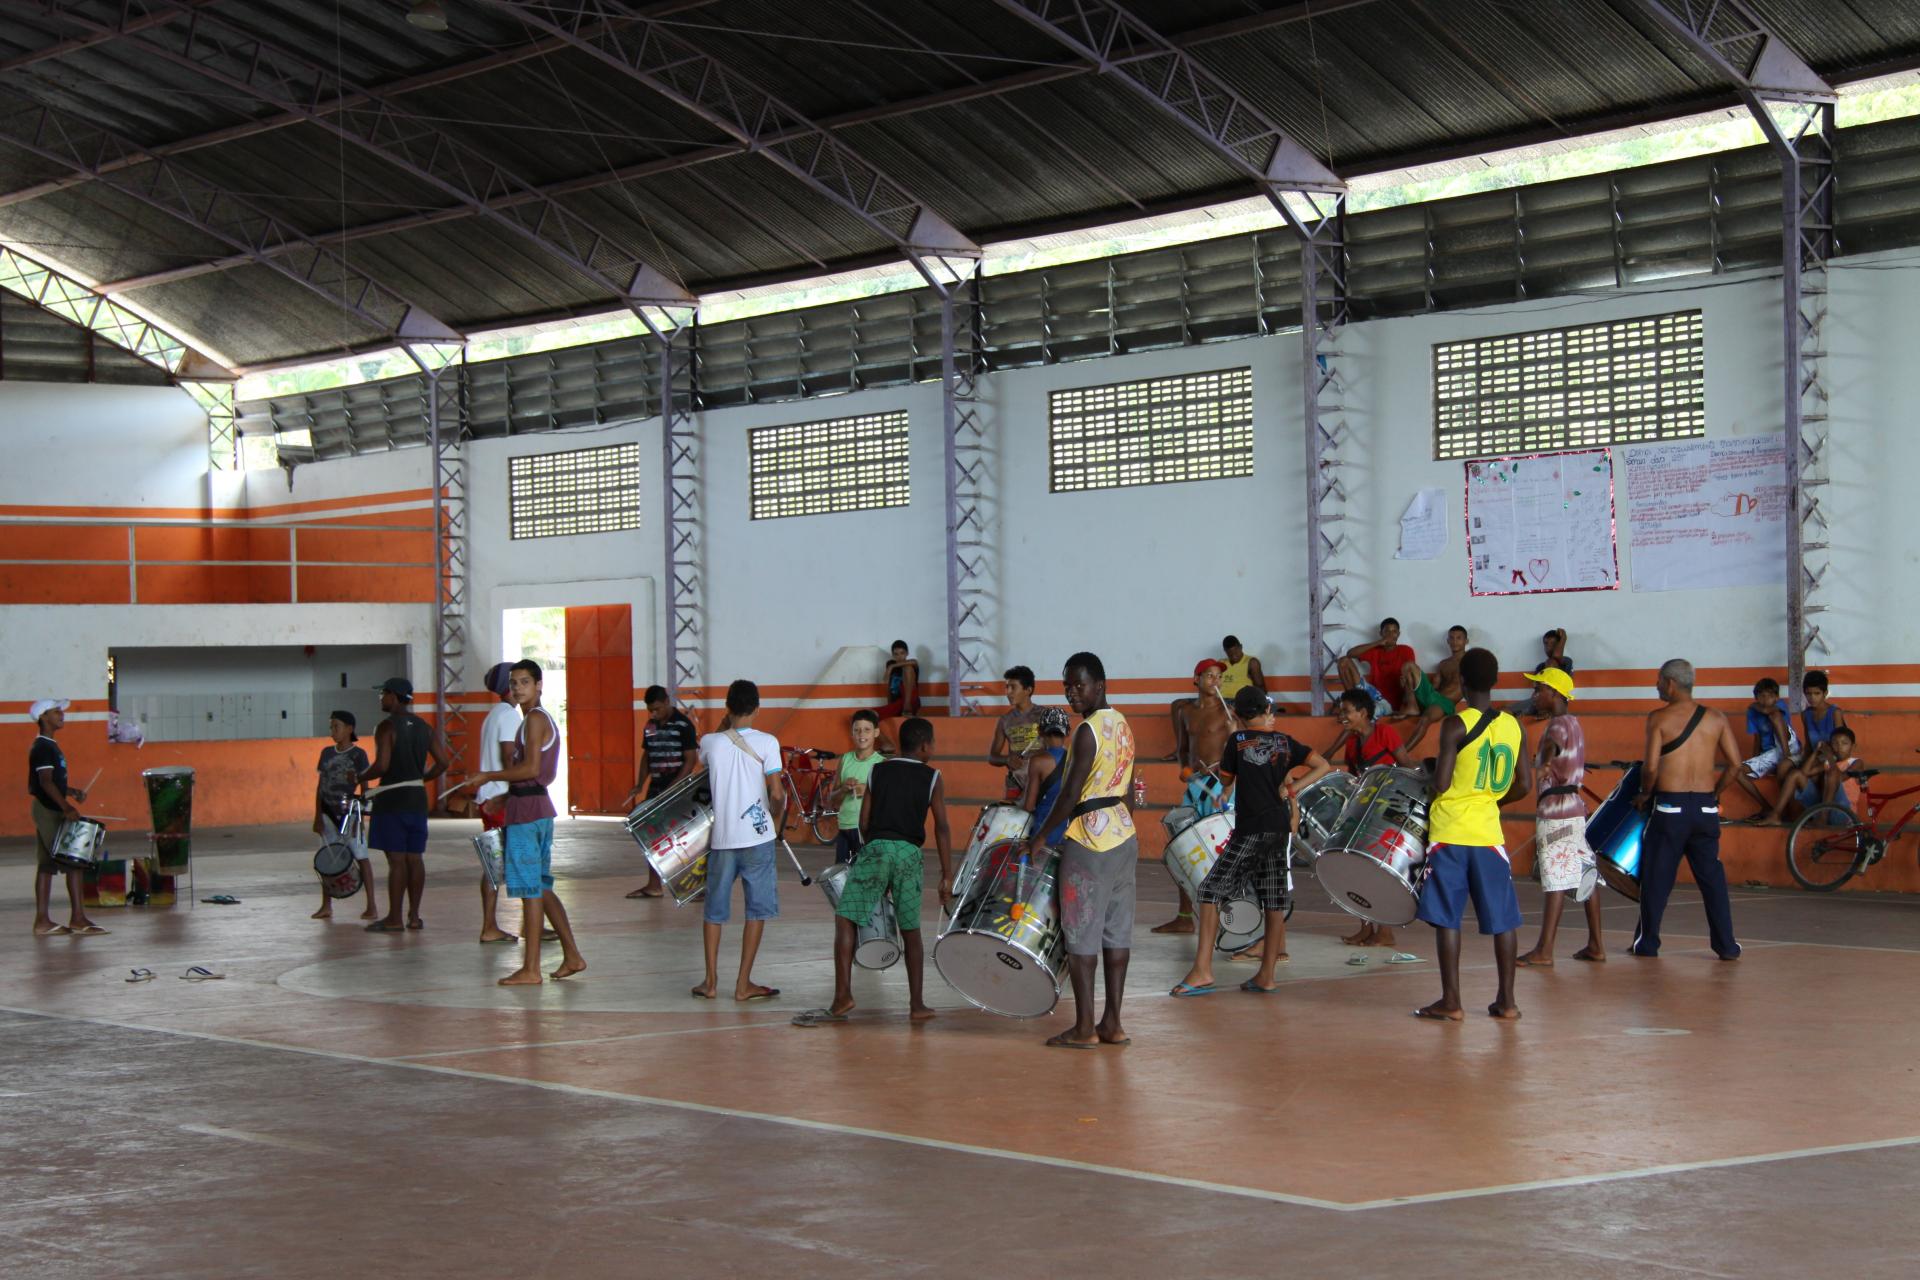 Drum group in Bahia